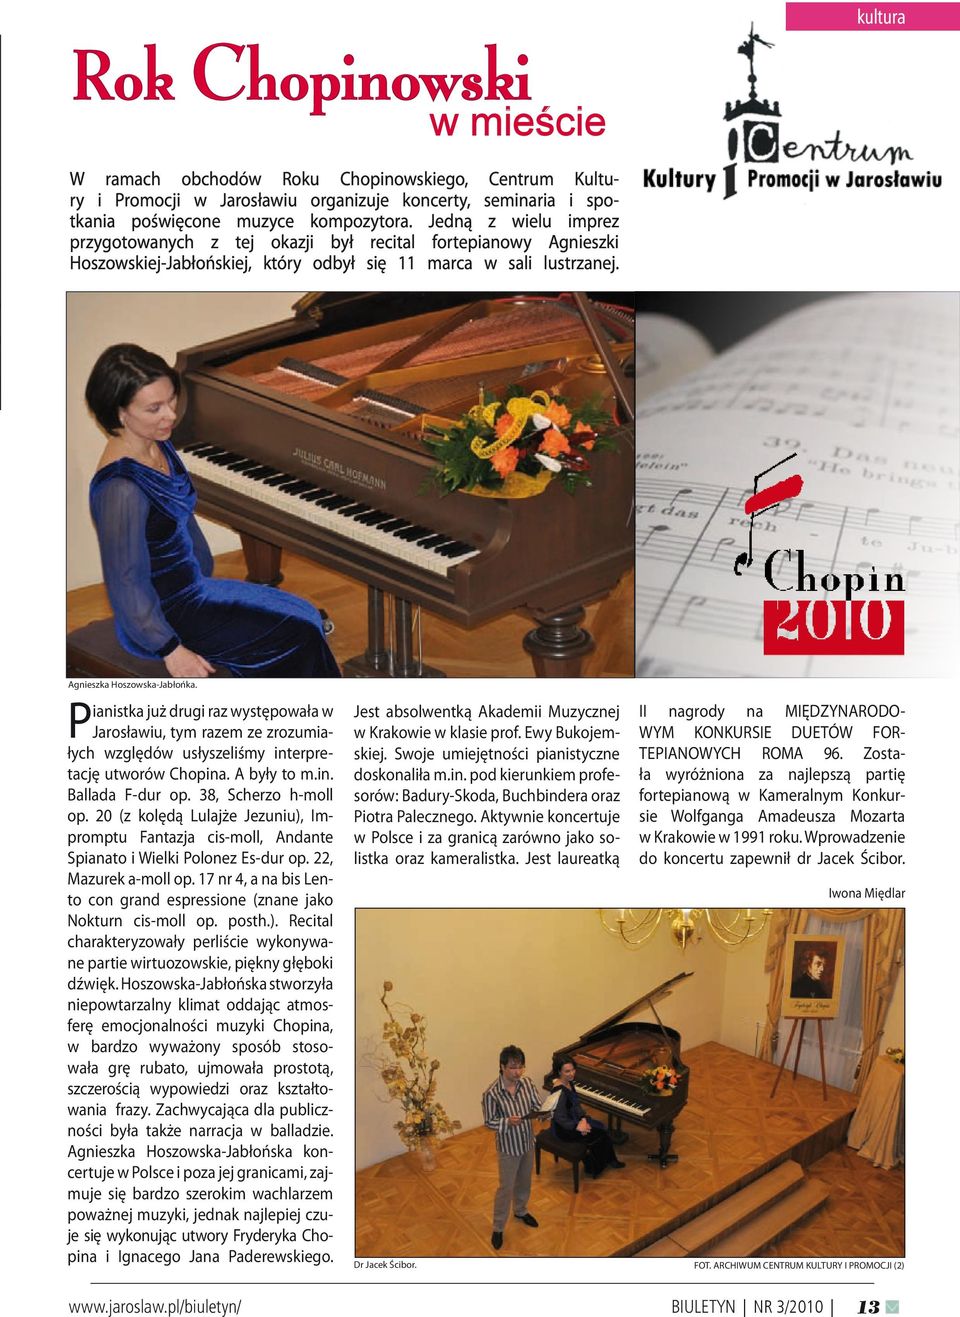 Pianistka już drugi raz występowała w Jarosławiu, tym razem ze zrozumiałych względów usłyszeliśmy interpretację utworów Chopina. A były to m.in. Ballada F-dur op. 38, Scherzo h-moll op.